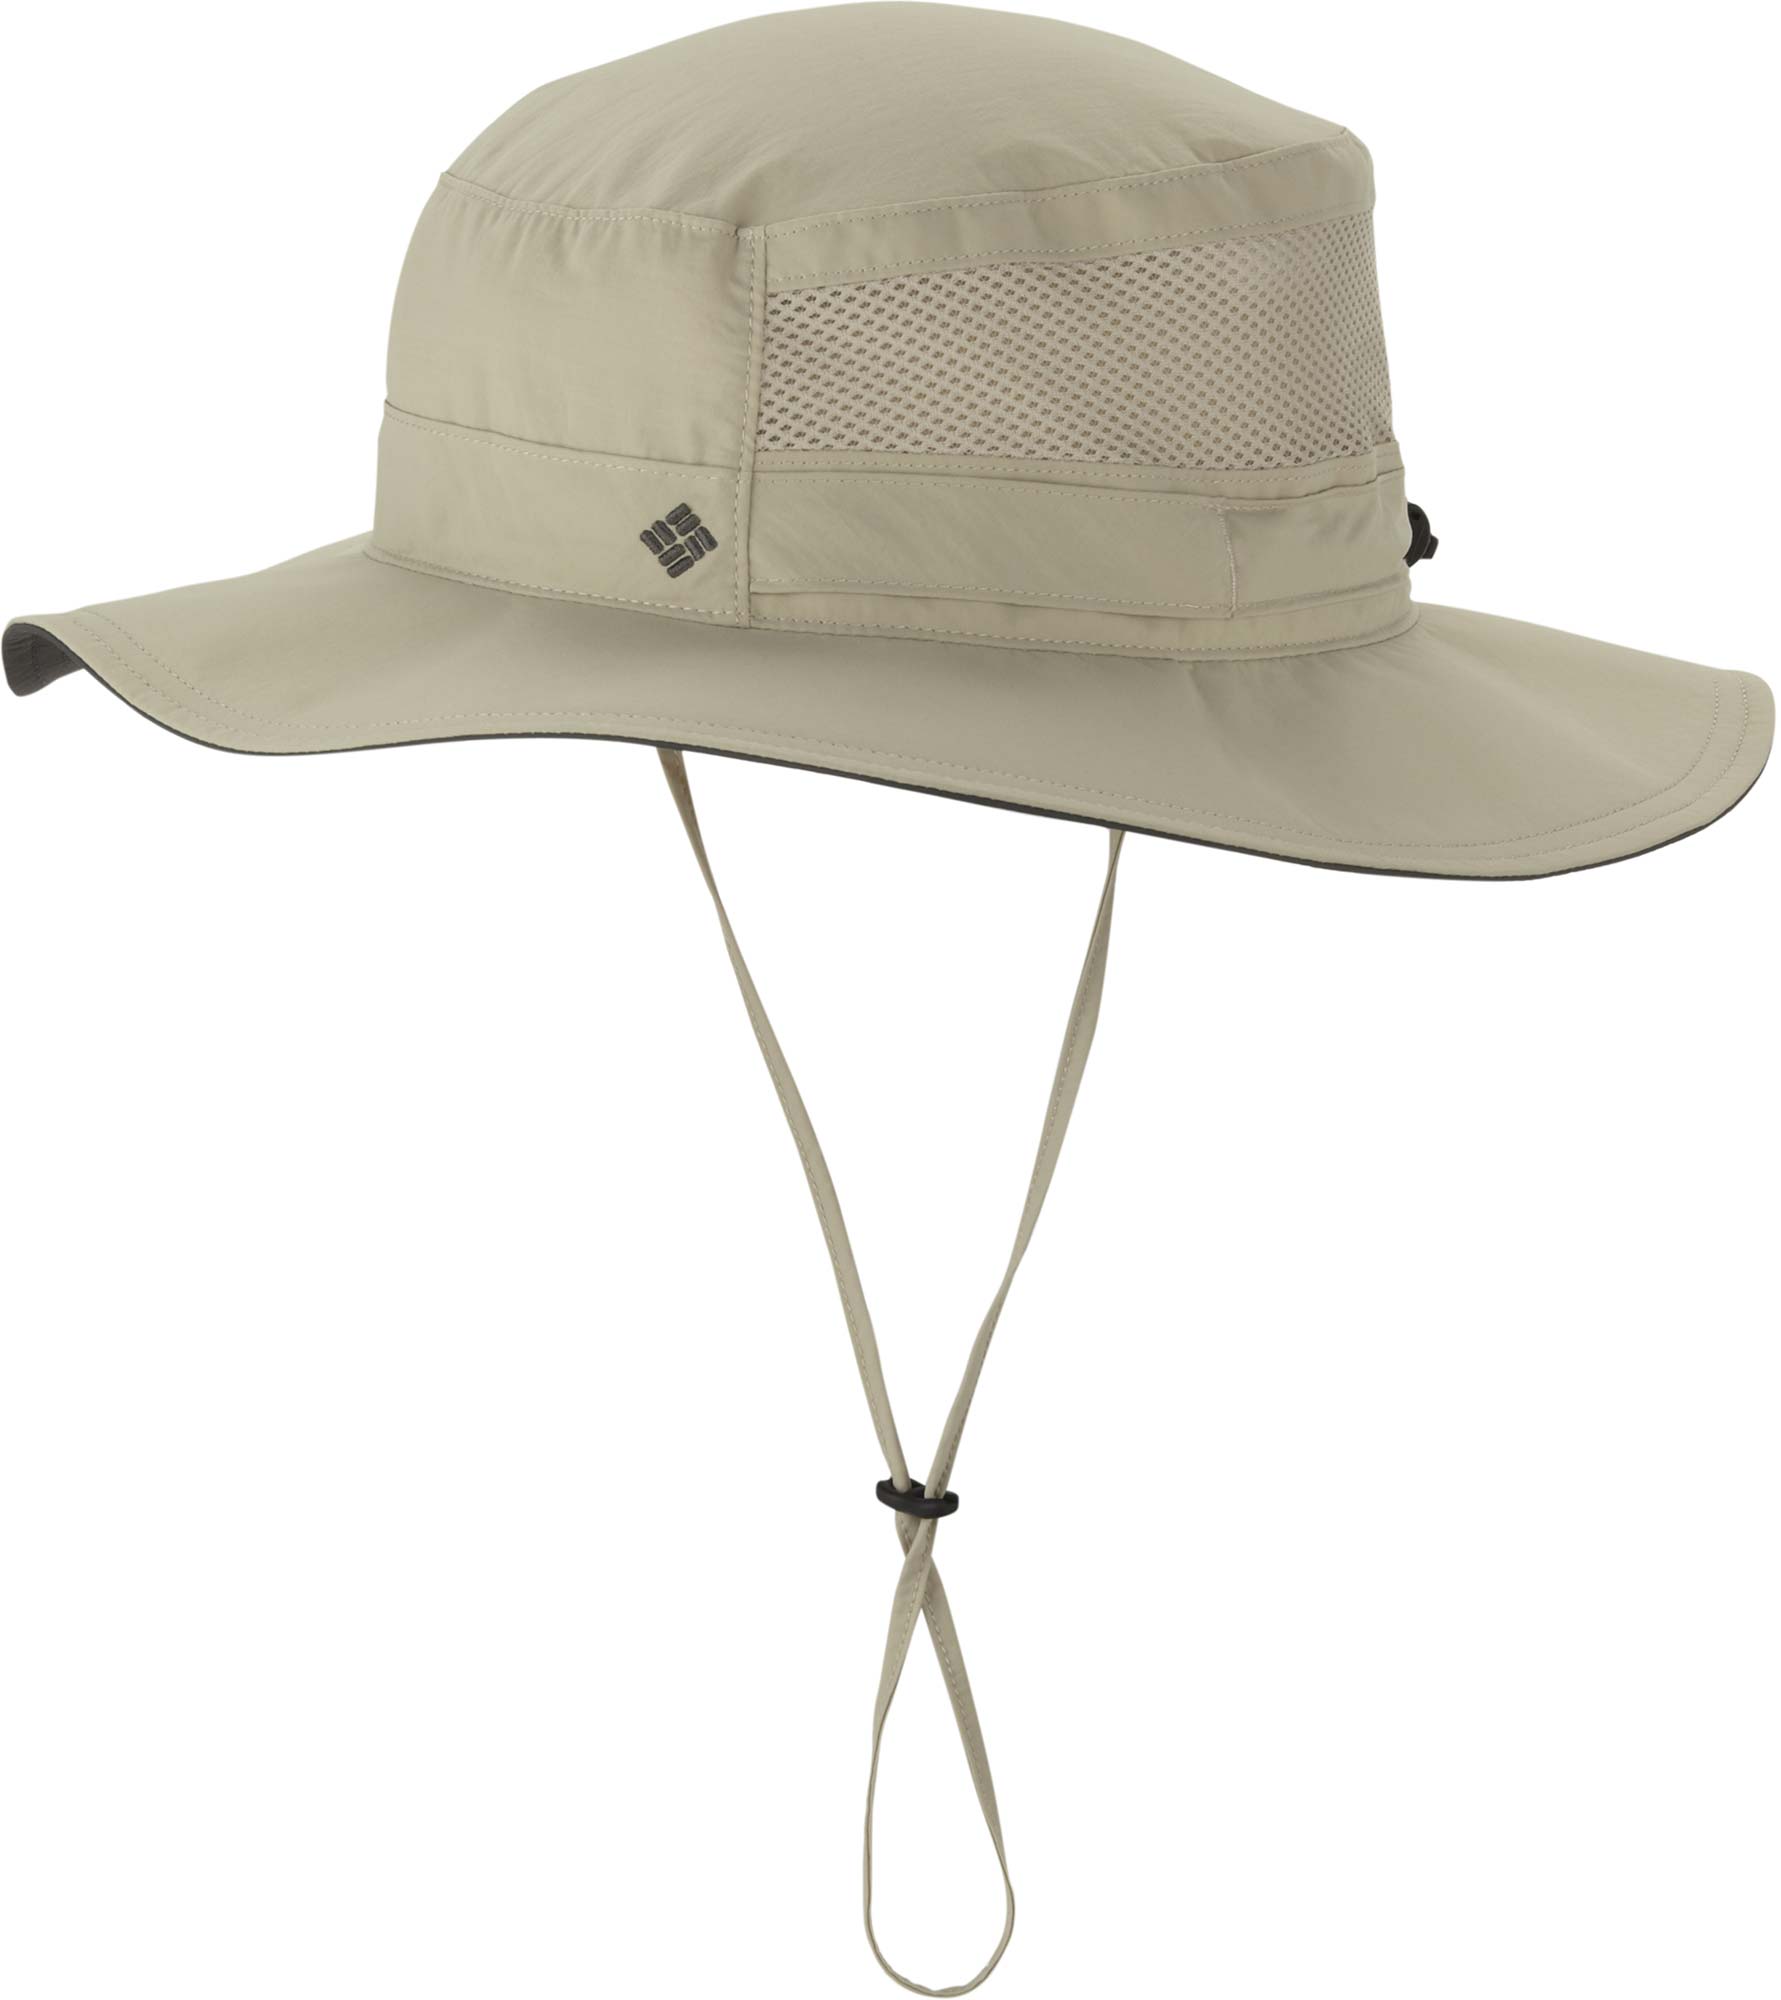 BORA BORA - Fishing hat